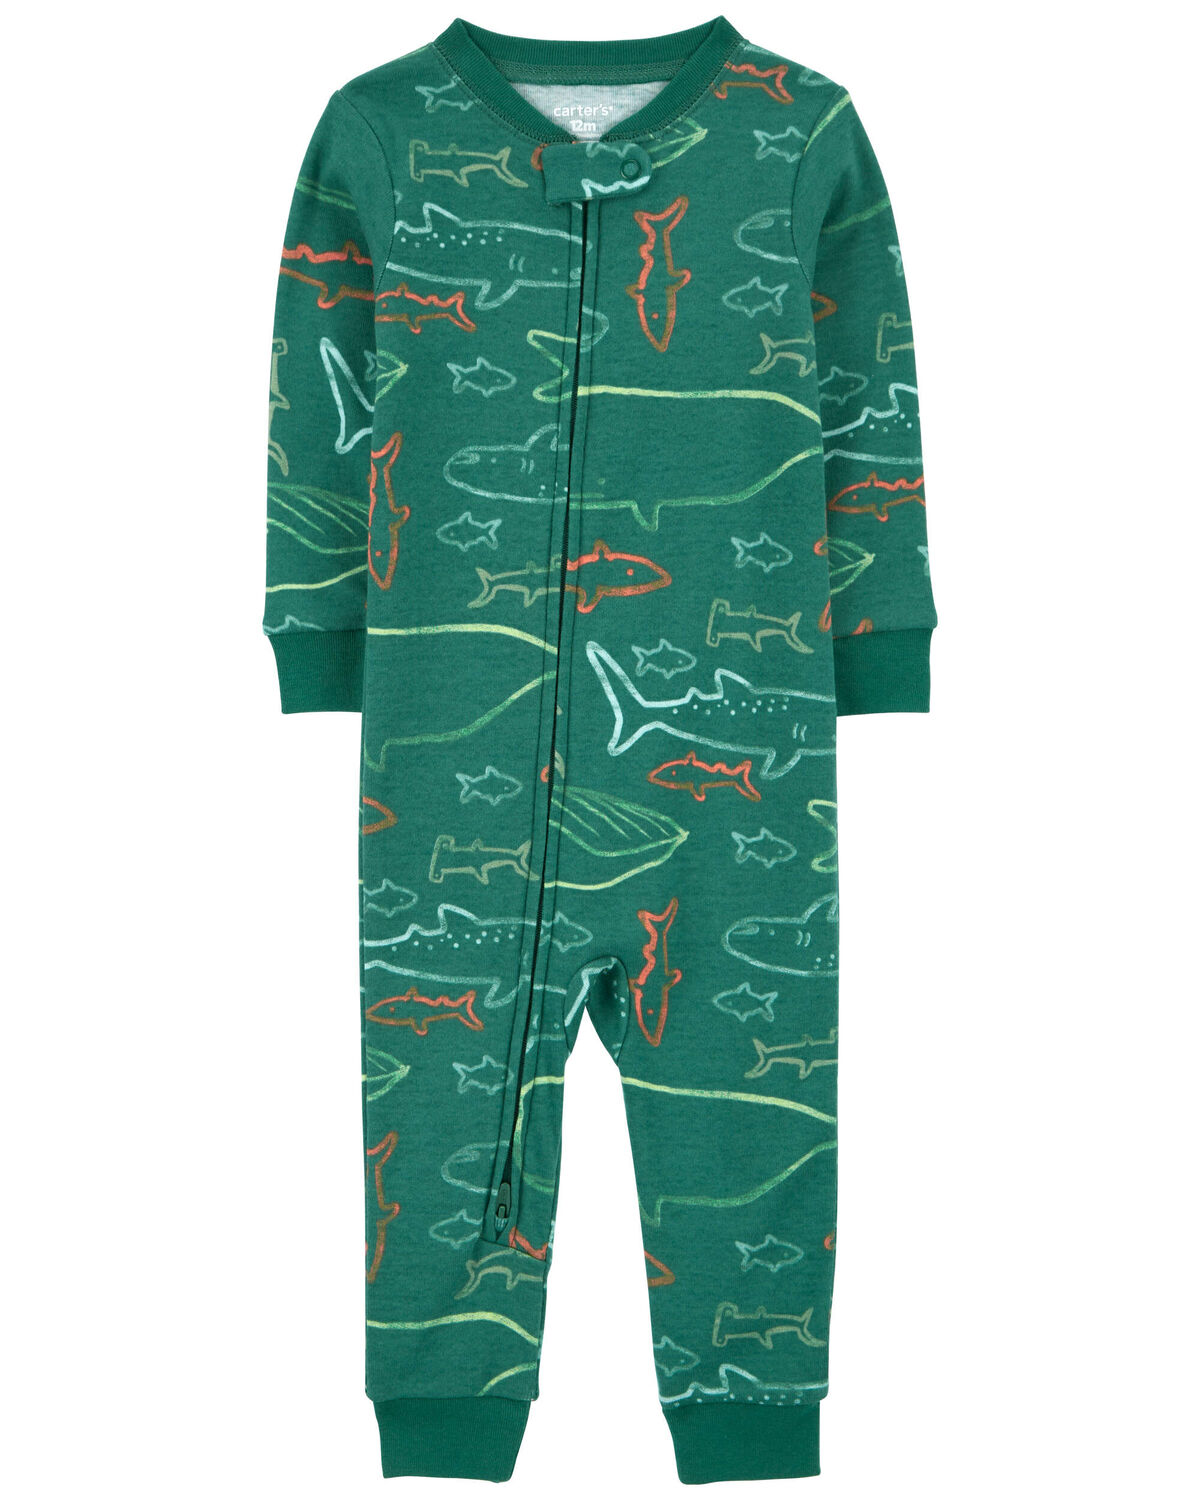 Toddler 1-Piece Shark 100% Snug Fit Cotton Footless Pajamas